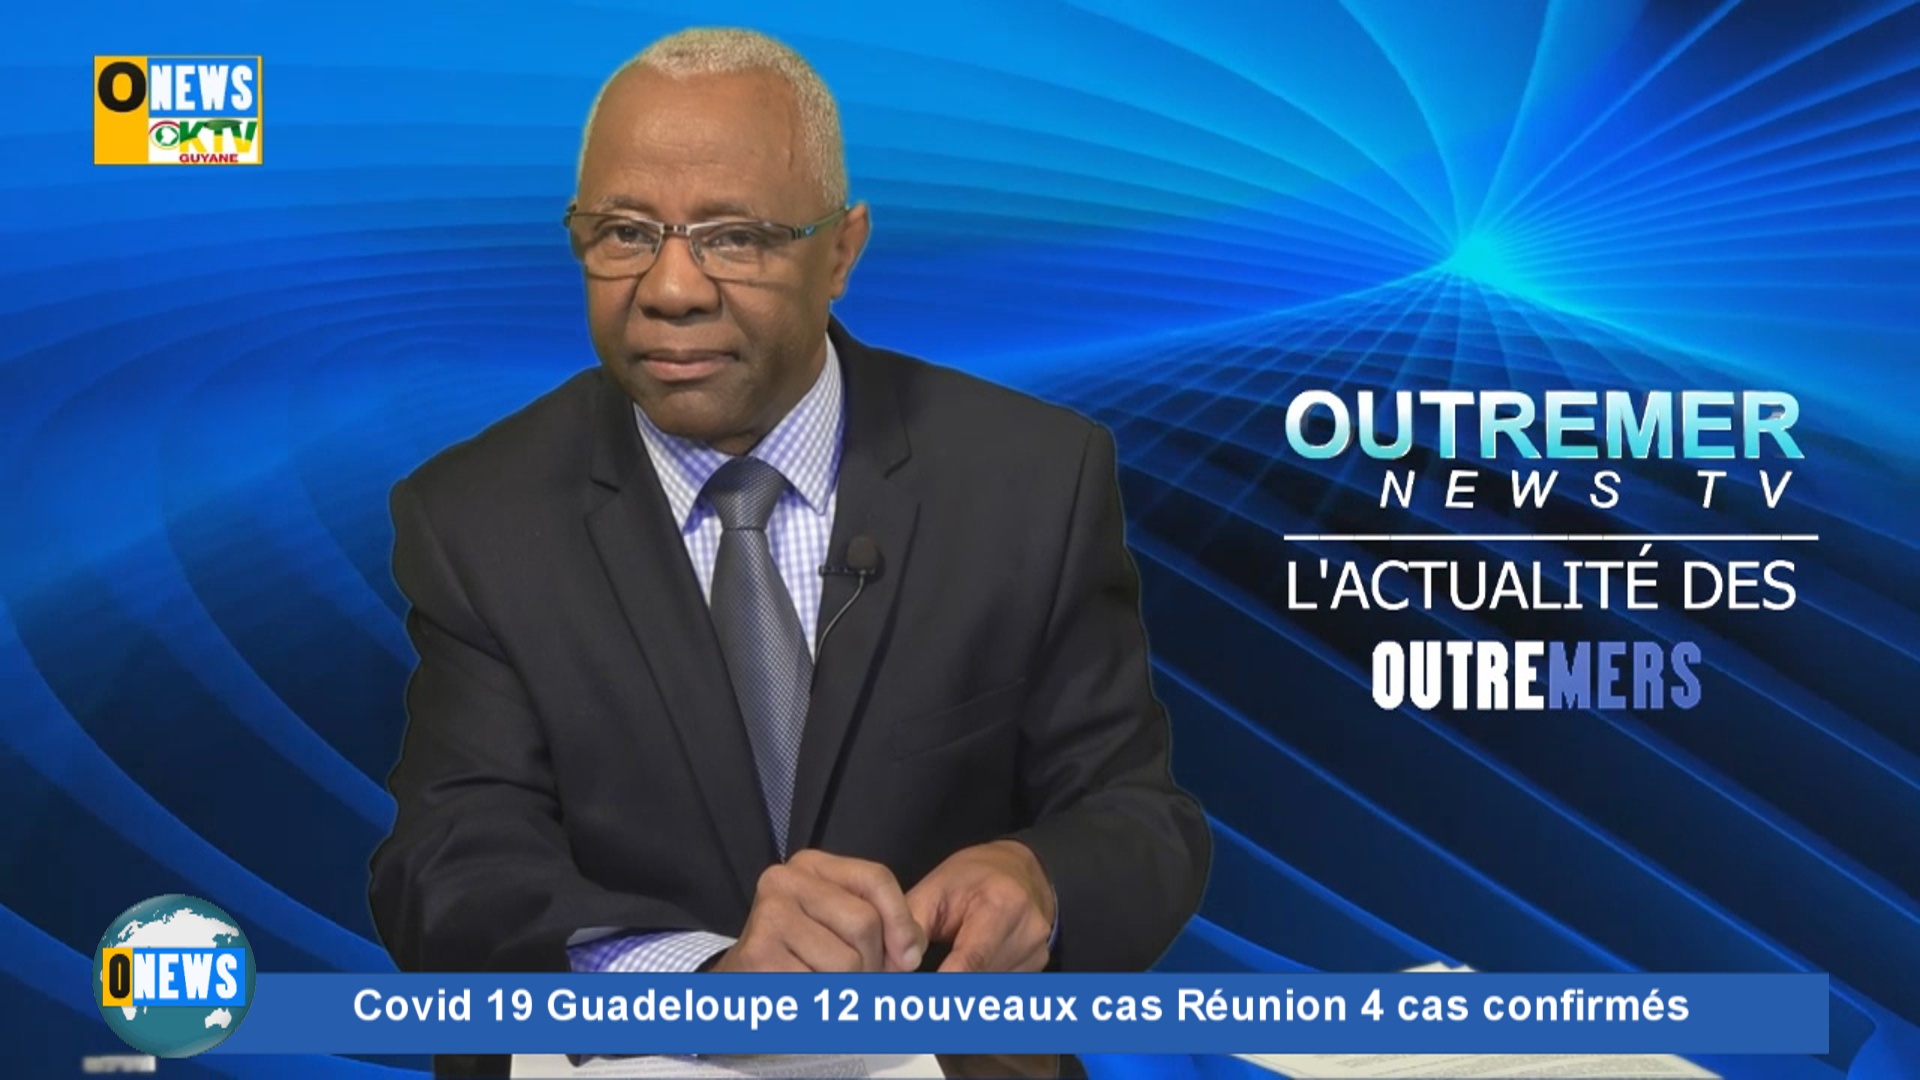 [Vidéo] Onews flash Covid 19 Guadeloupe 12 nouveaux cas Réunion 4 cas confirmés